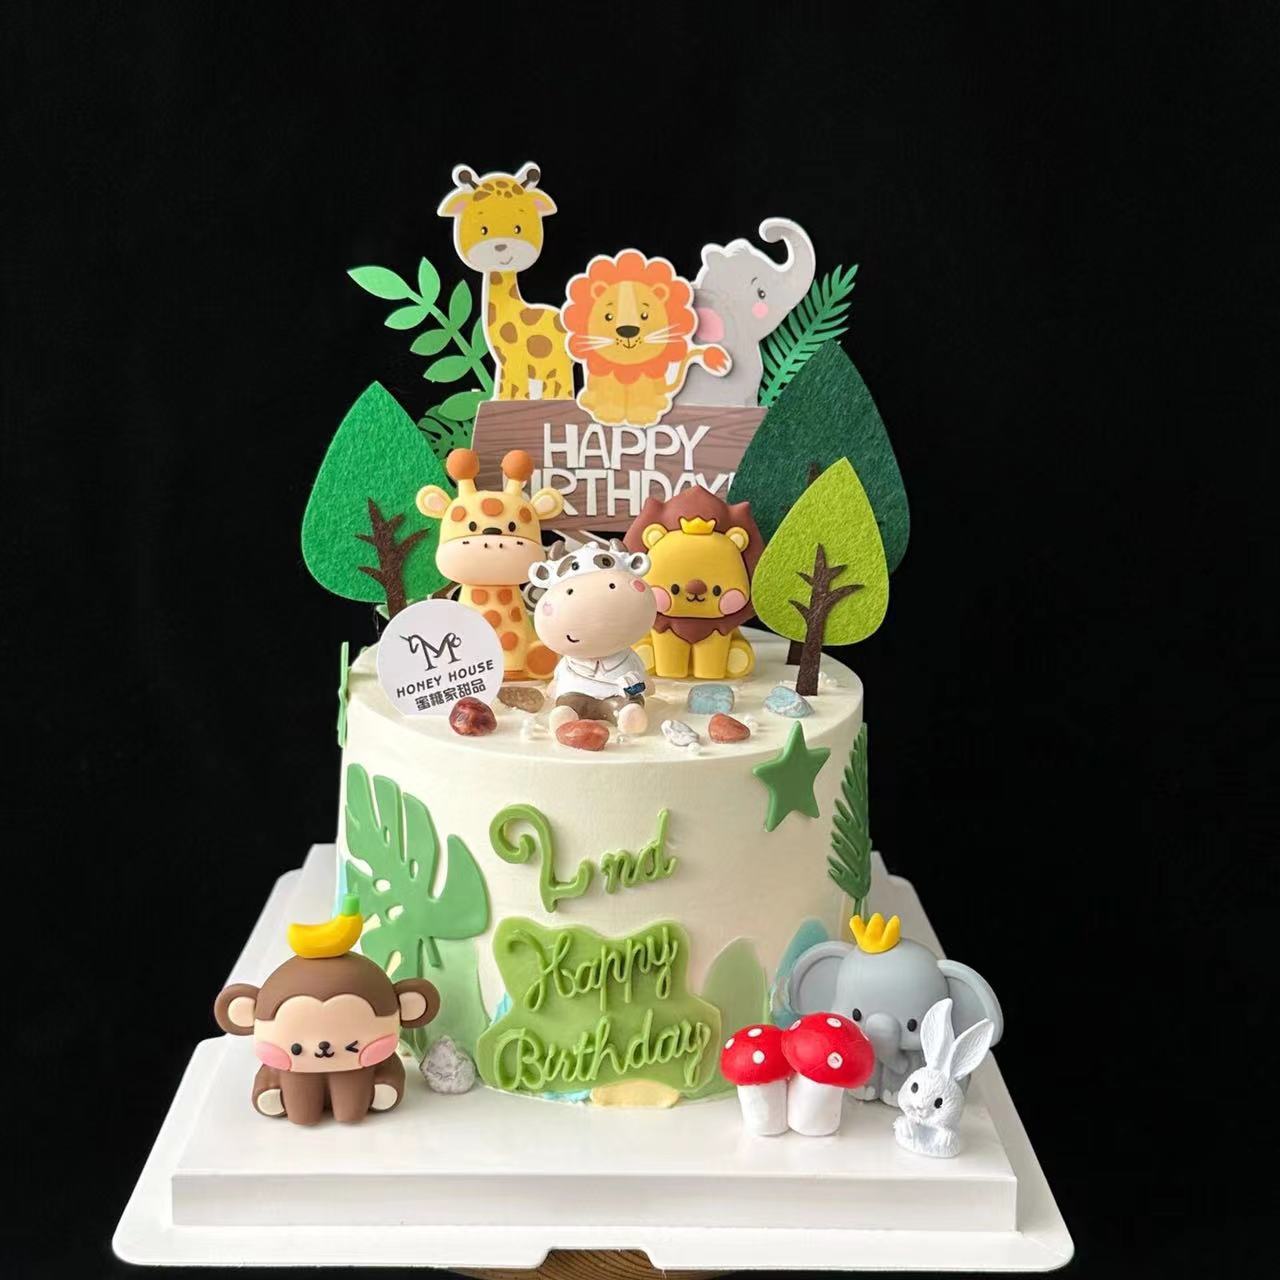 网红森系动物园蛋糕装饰可爱老虎狮子小象猴子小动物生日烘焙摆件